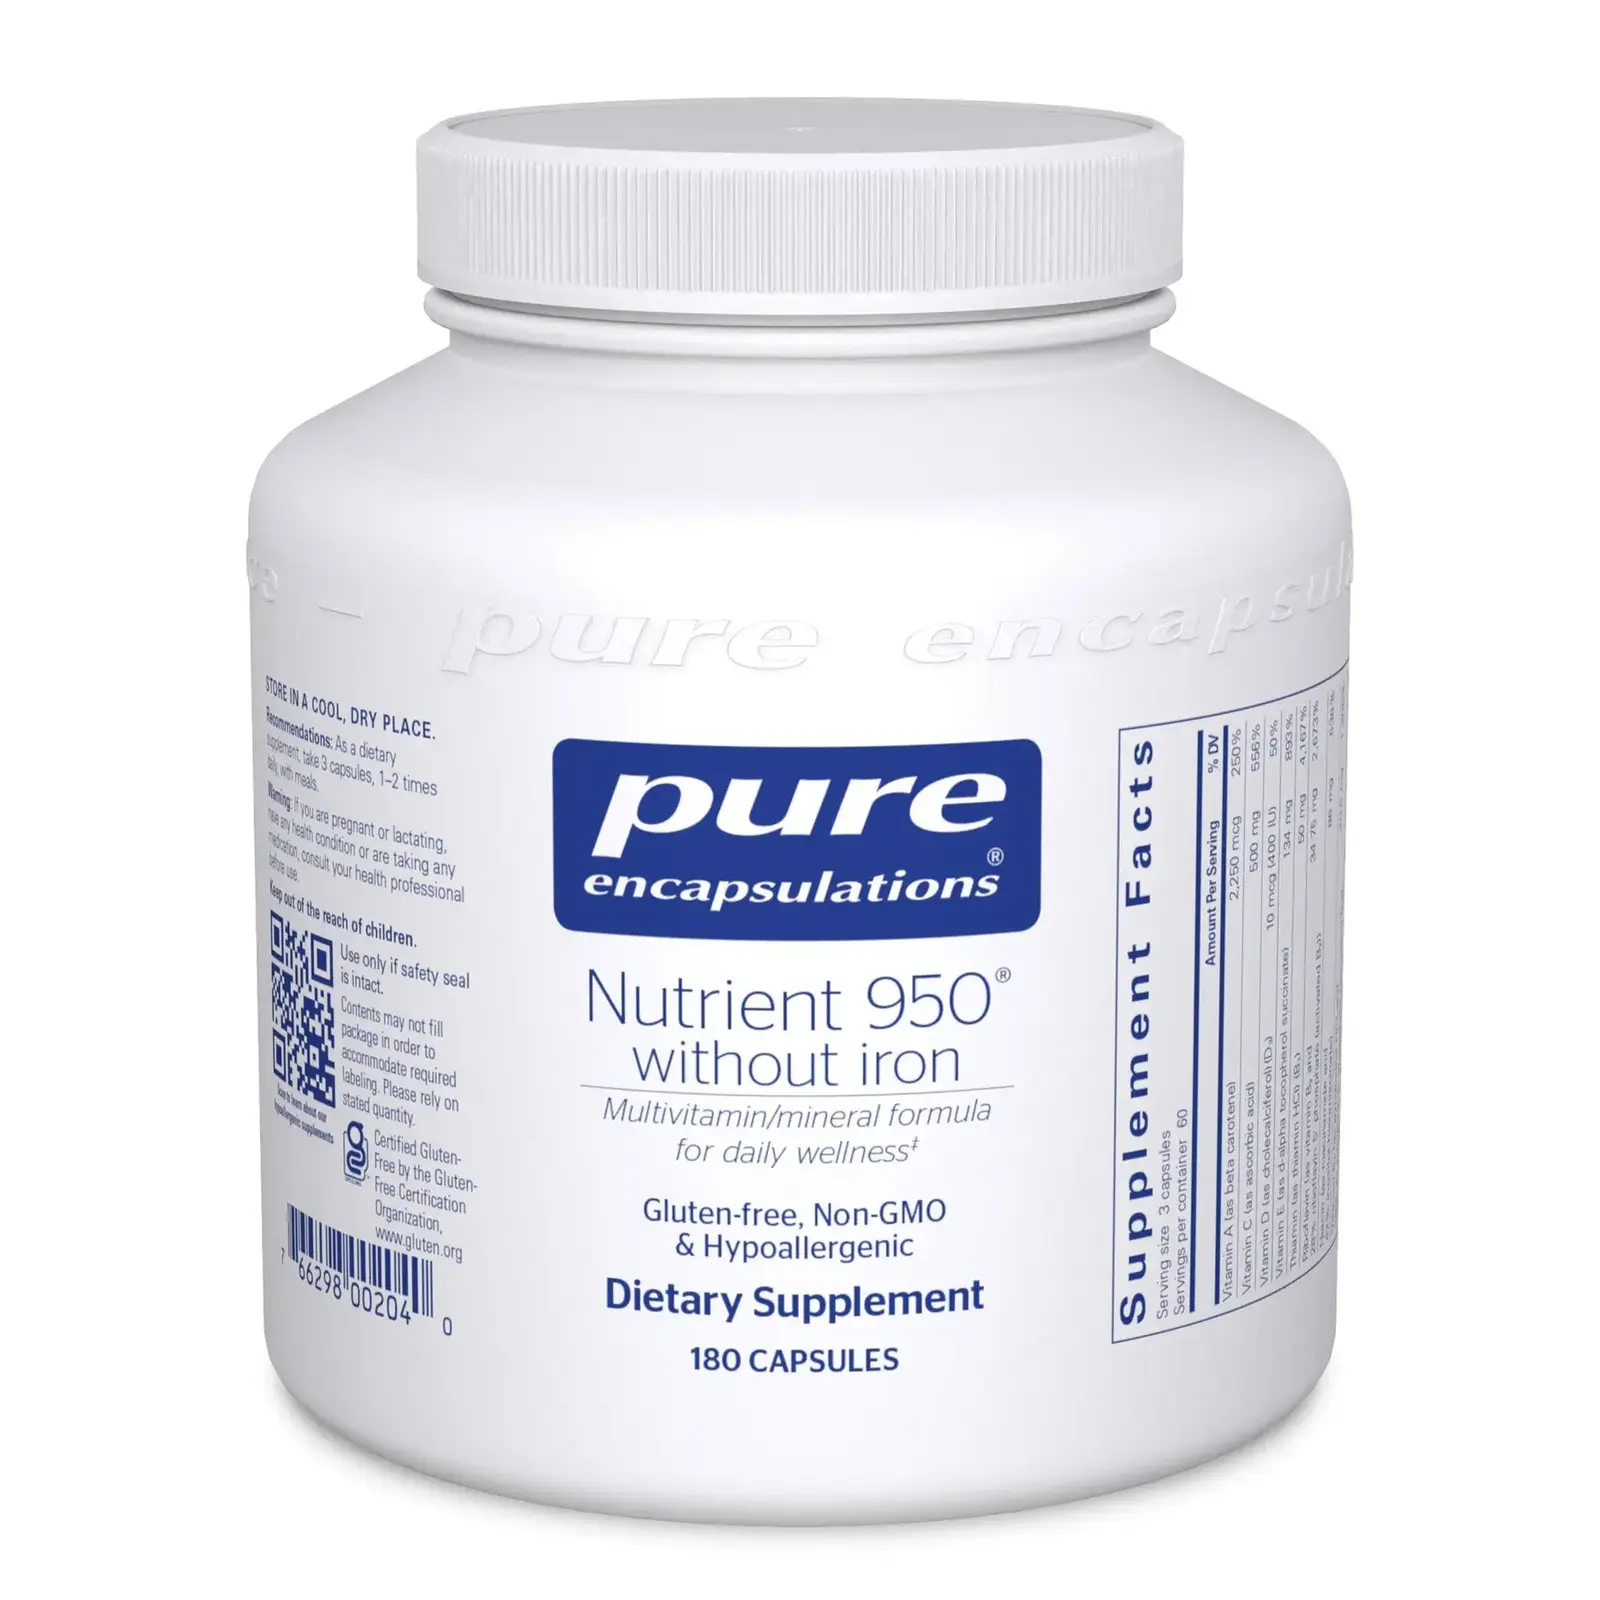 Nutrient 950® w/o Iron